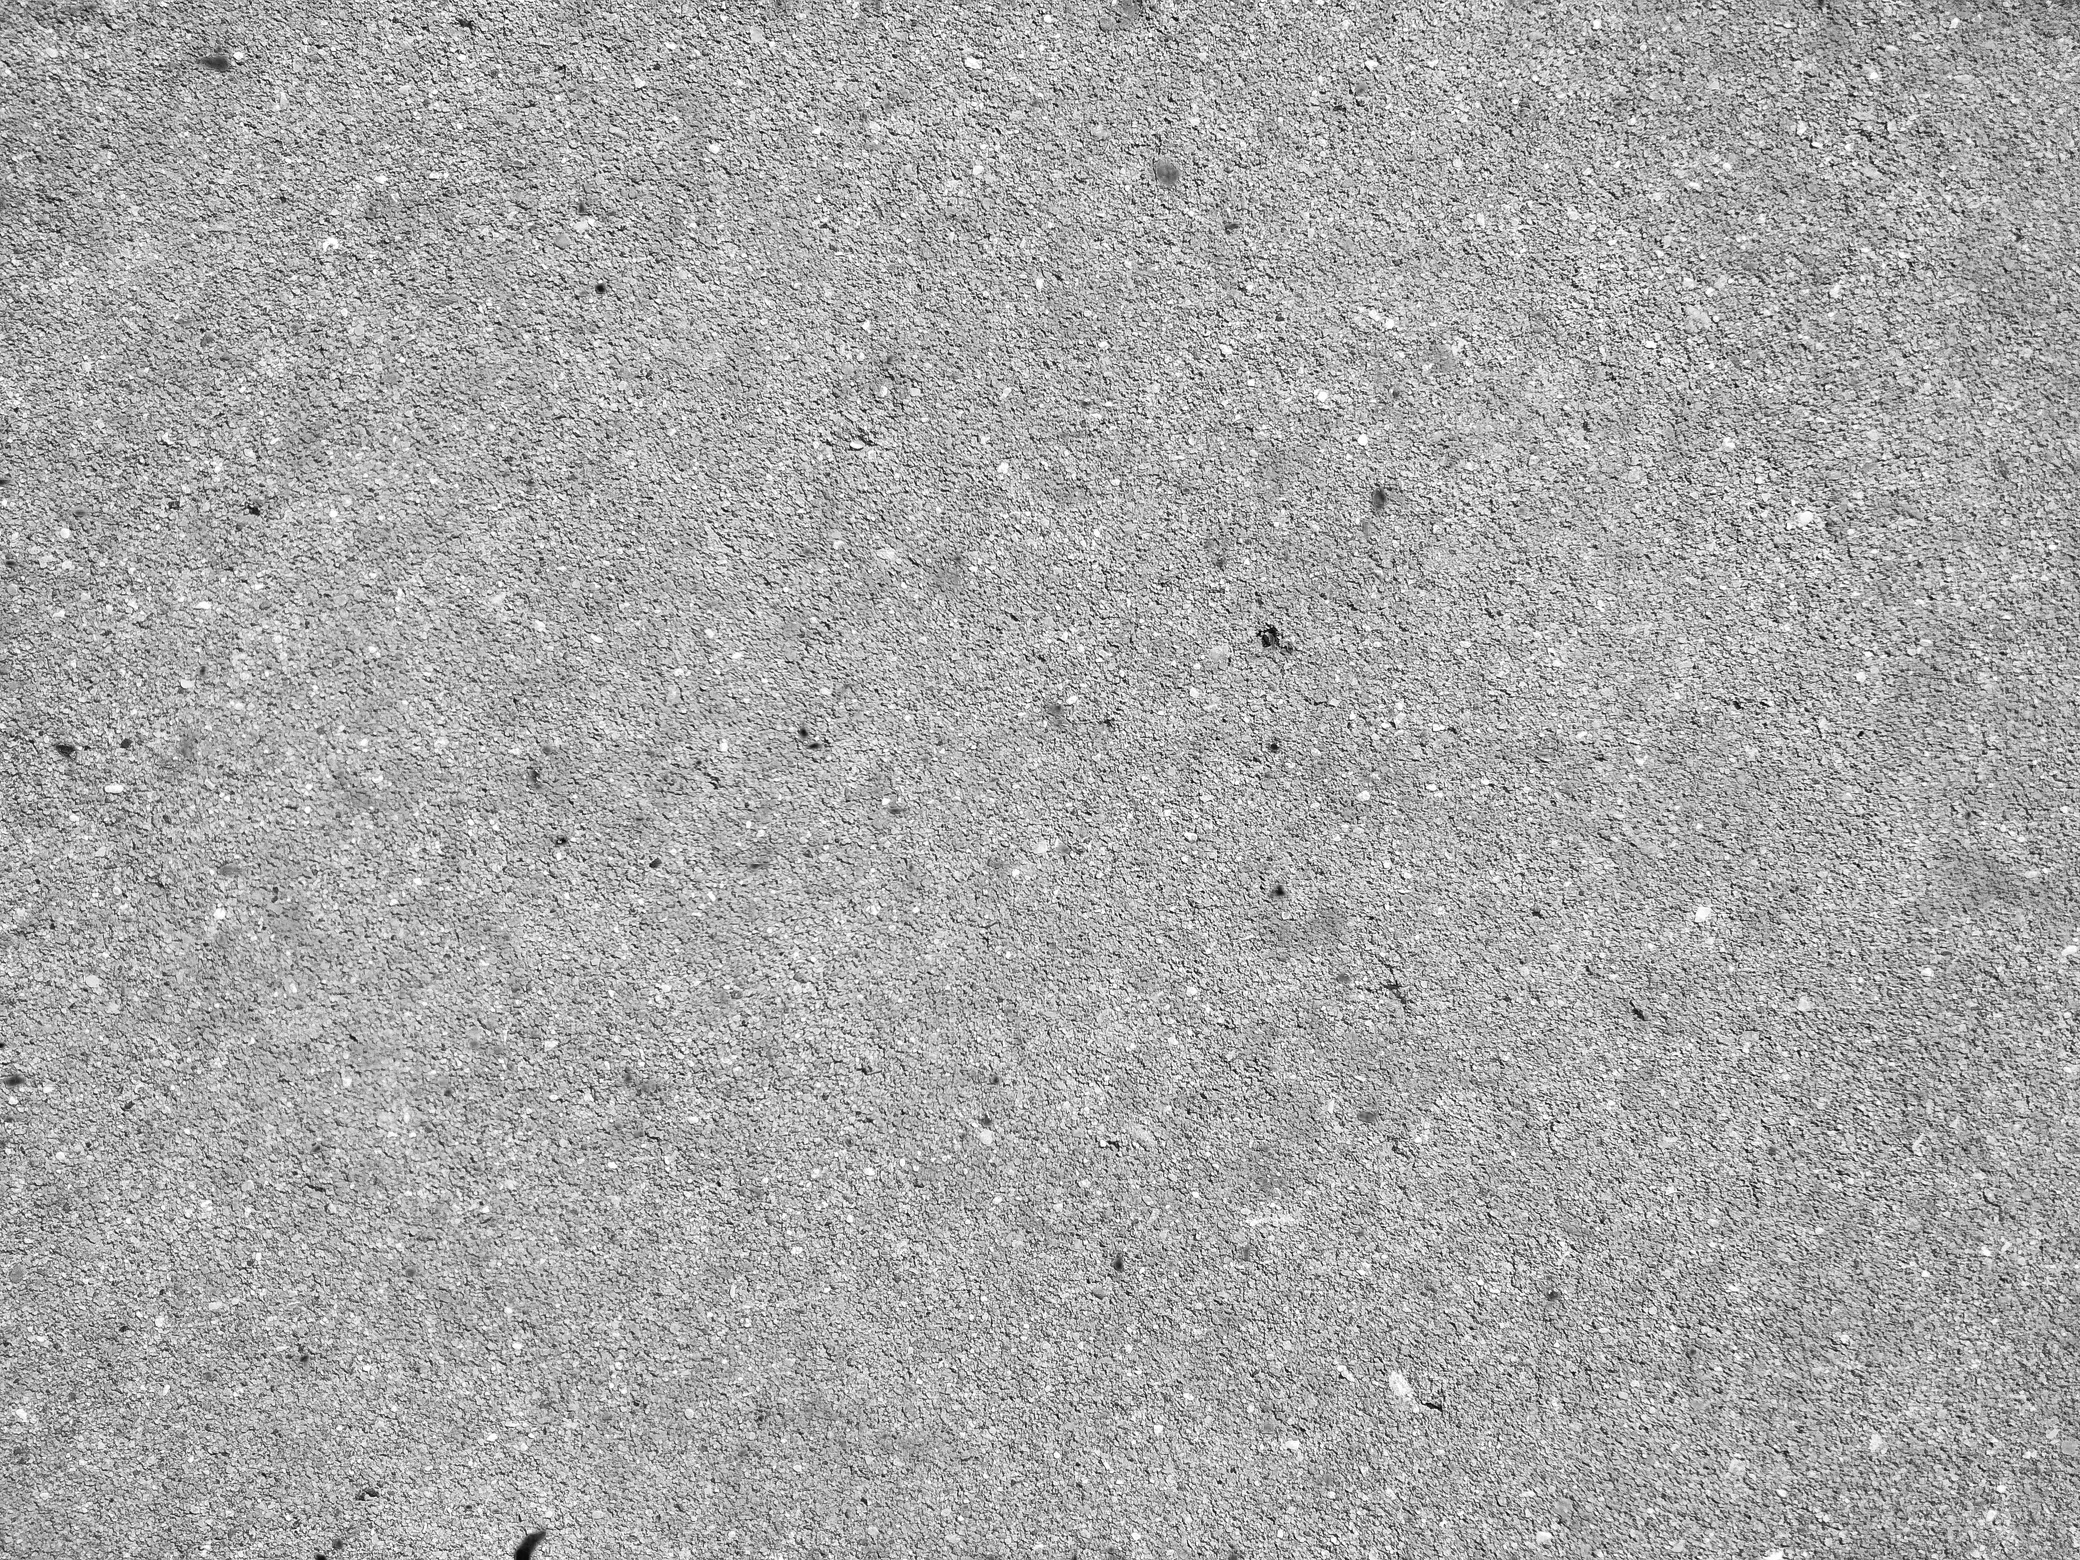 Grey grainy textured asphalt closeup photo